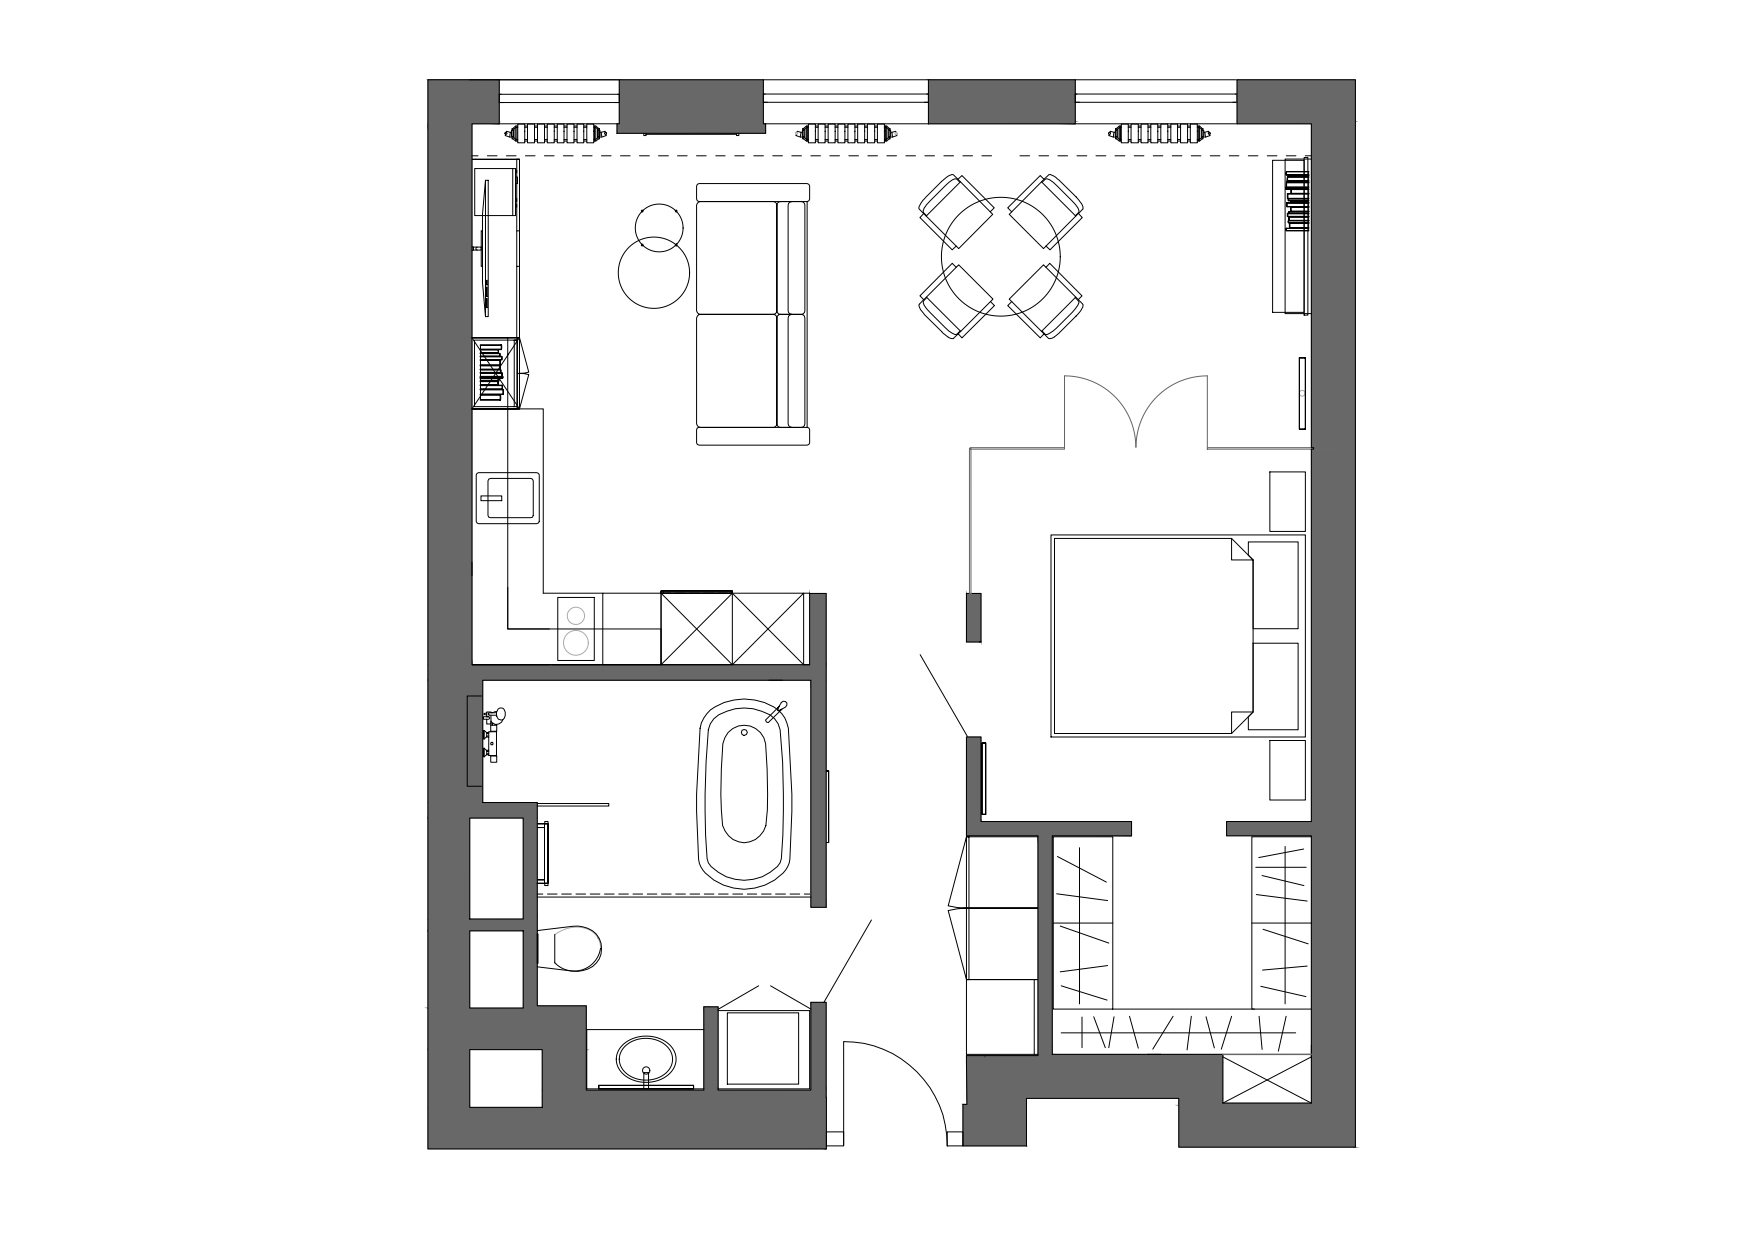 公寓设计,小户型设计,50㎡,公寓设计案例,公寓设计方案,玻璃隔断,原木色,莫斯科